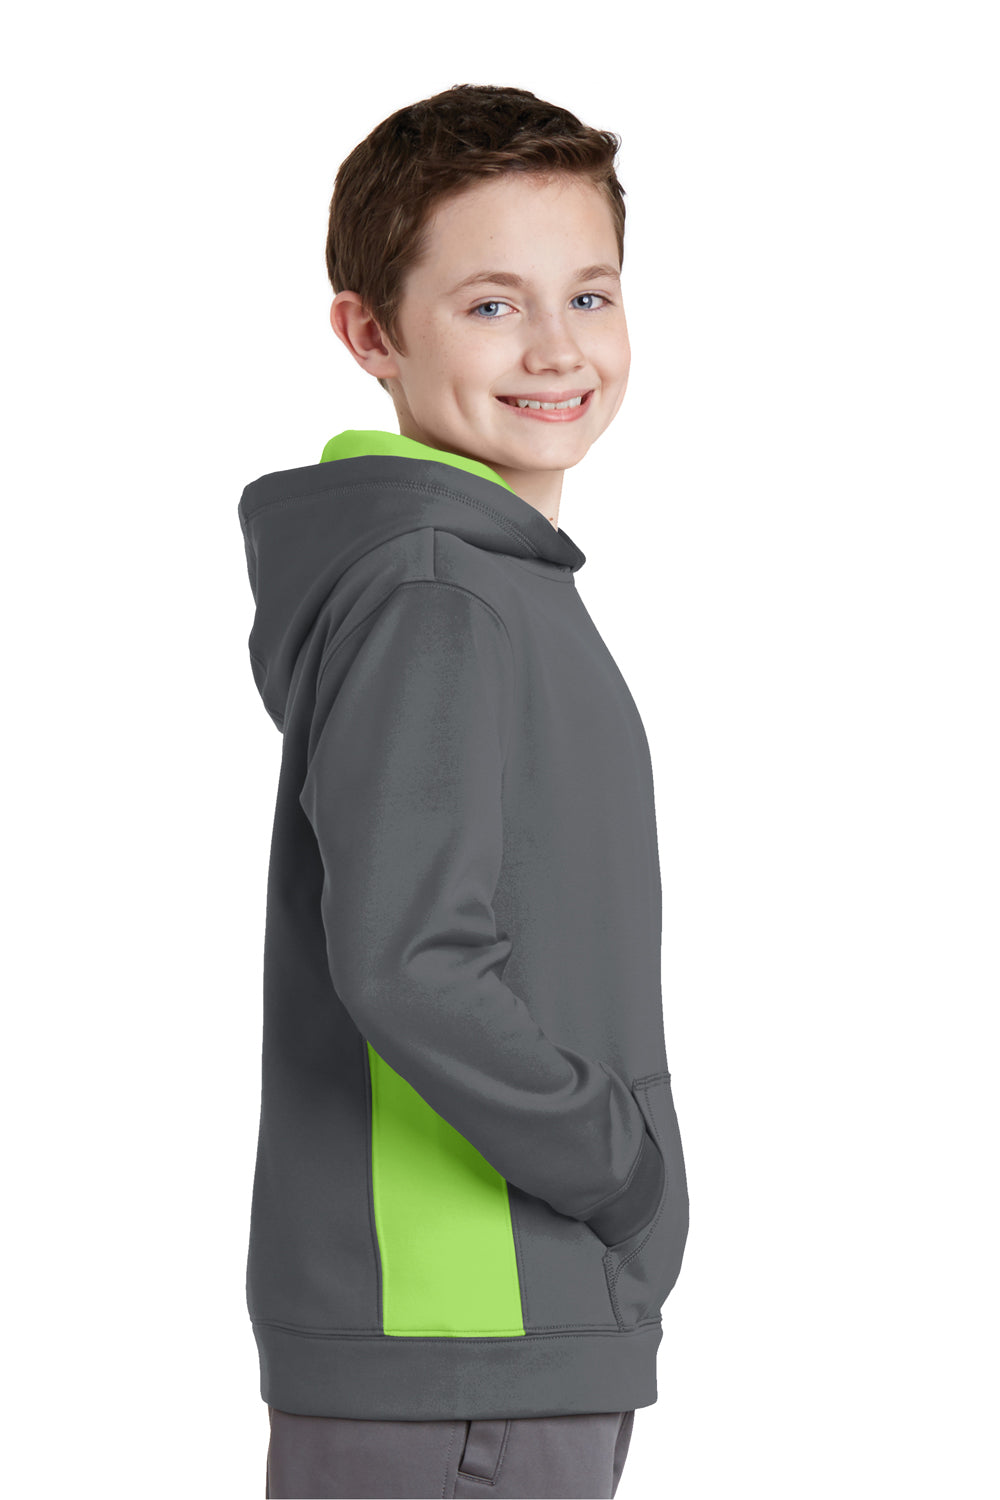 Sport-Tek YST235 Youth Sport-Wick Moisture Wicking Fleece Hooded Sweatshirt Hoodie Dark Grey/Lime Green Side